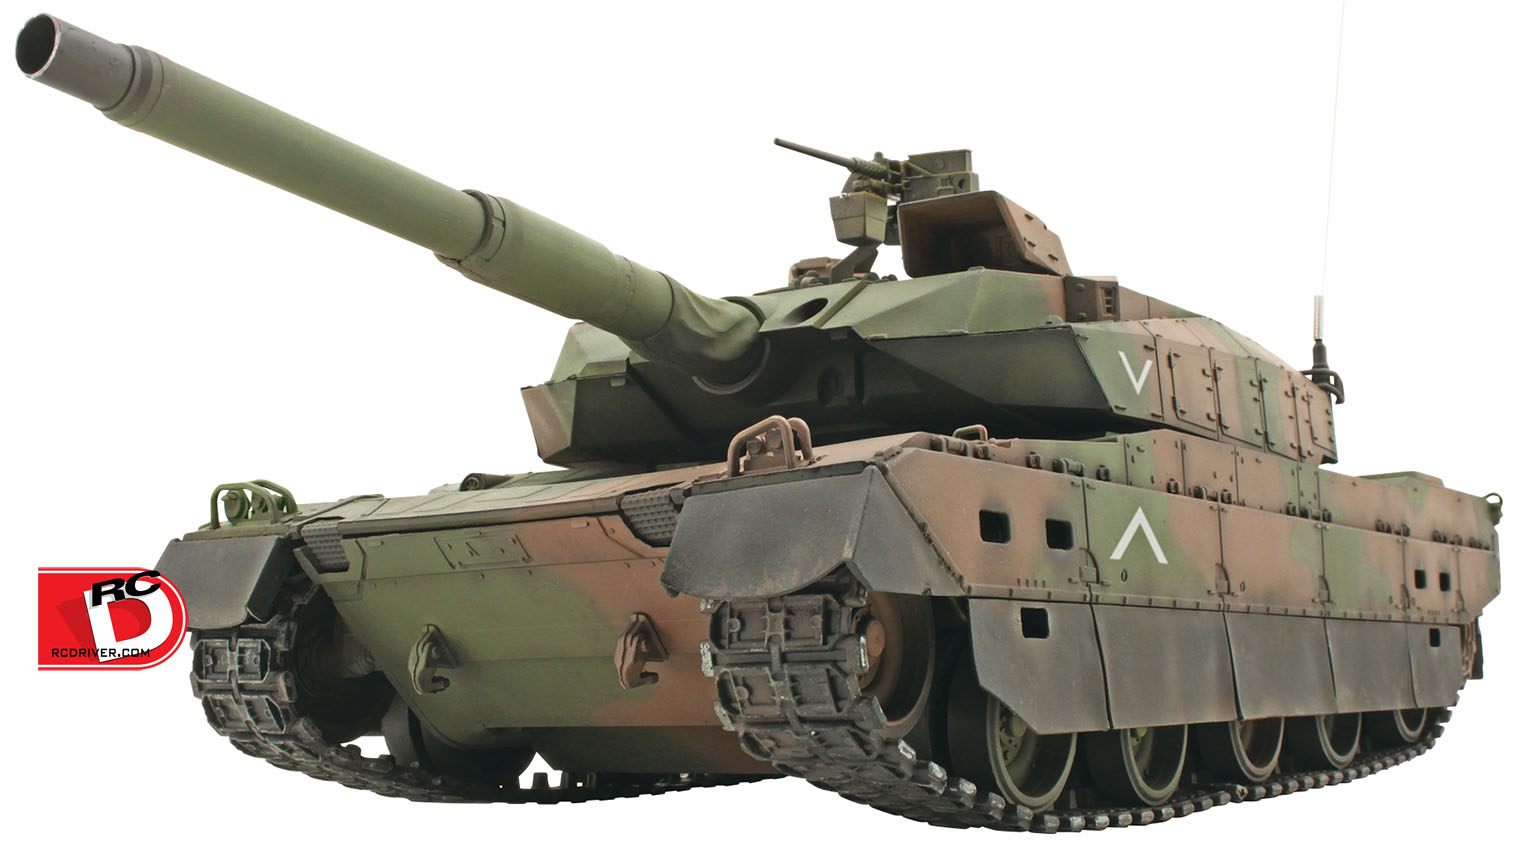 King Tiger Porsche Desert Camo & Japanese Type 10 NATO Battle Tanks